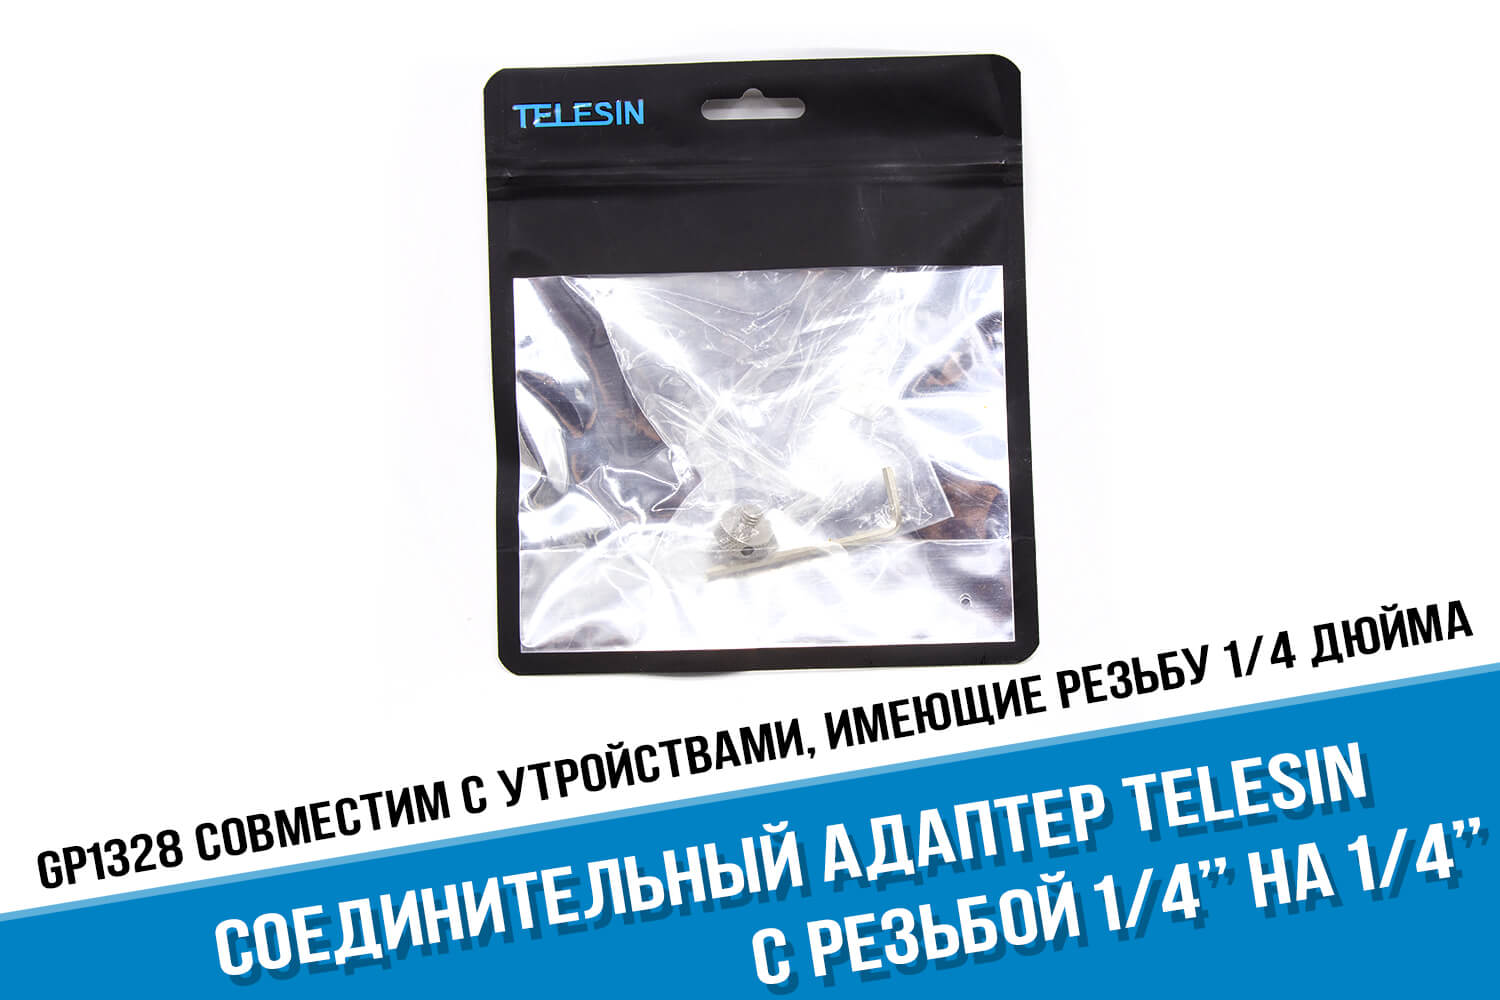 Упаковка соединительного адаптера с резьбой 1/4 дюйма на 1/4 дюйма фирмы Telesin